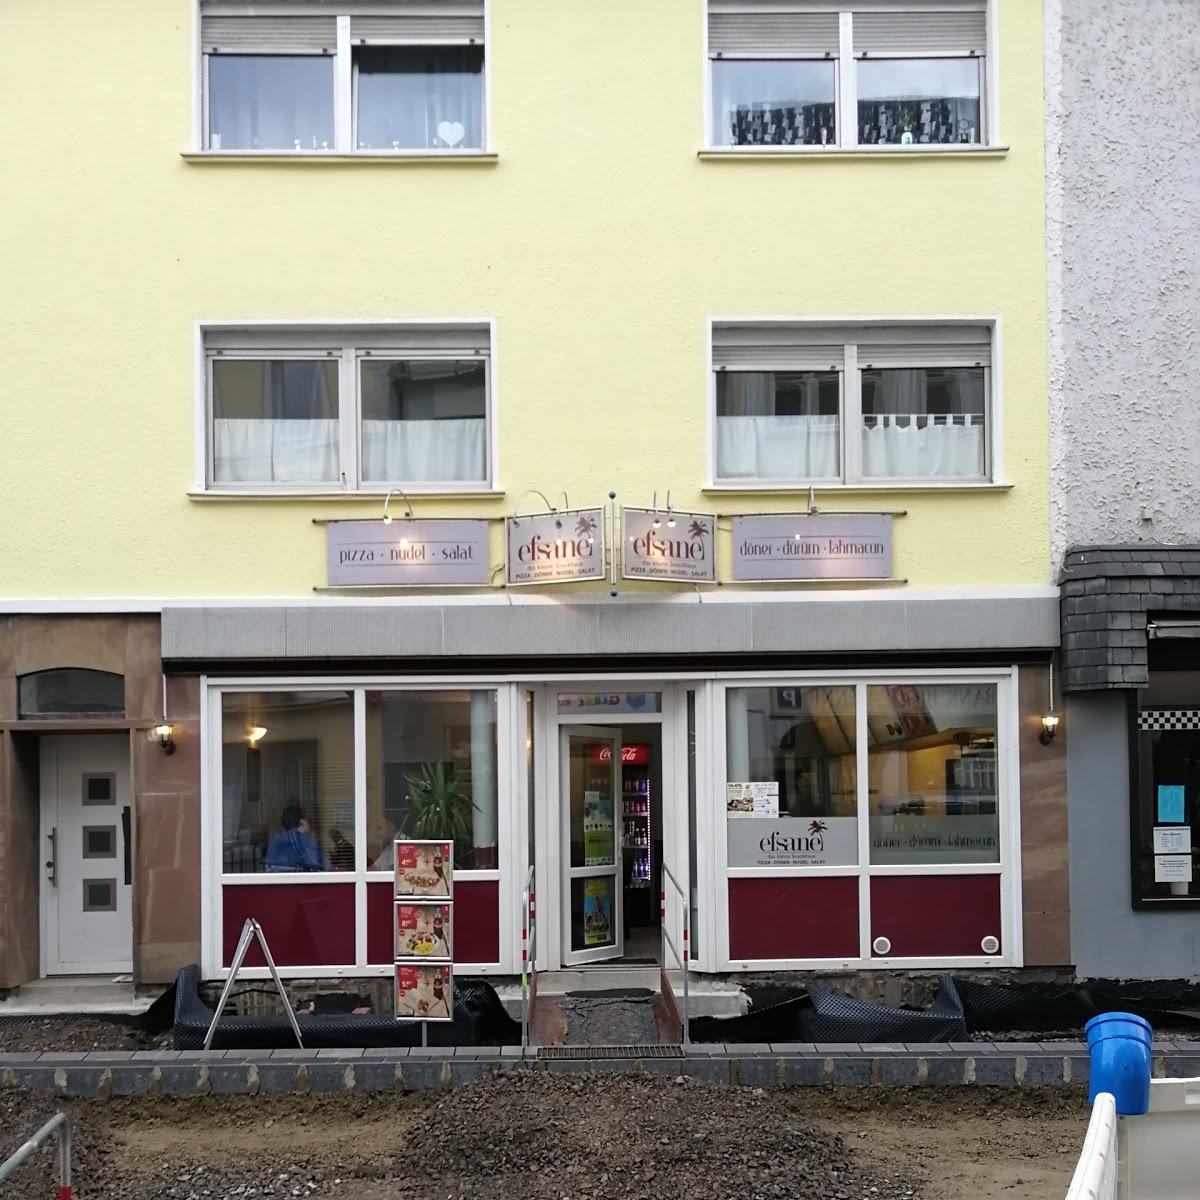 Restaurant "City Grill (Döner & Pizza)" in Attendorn